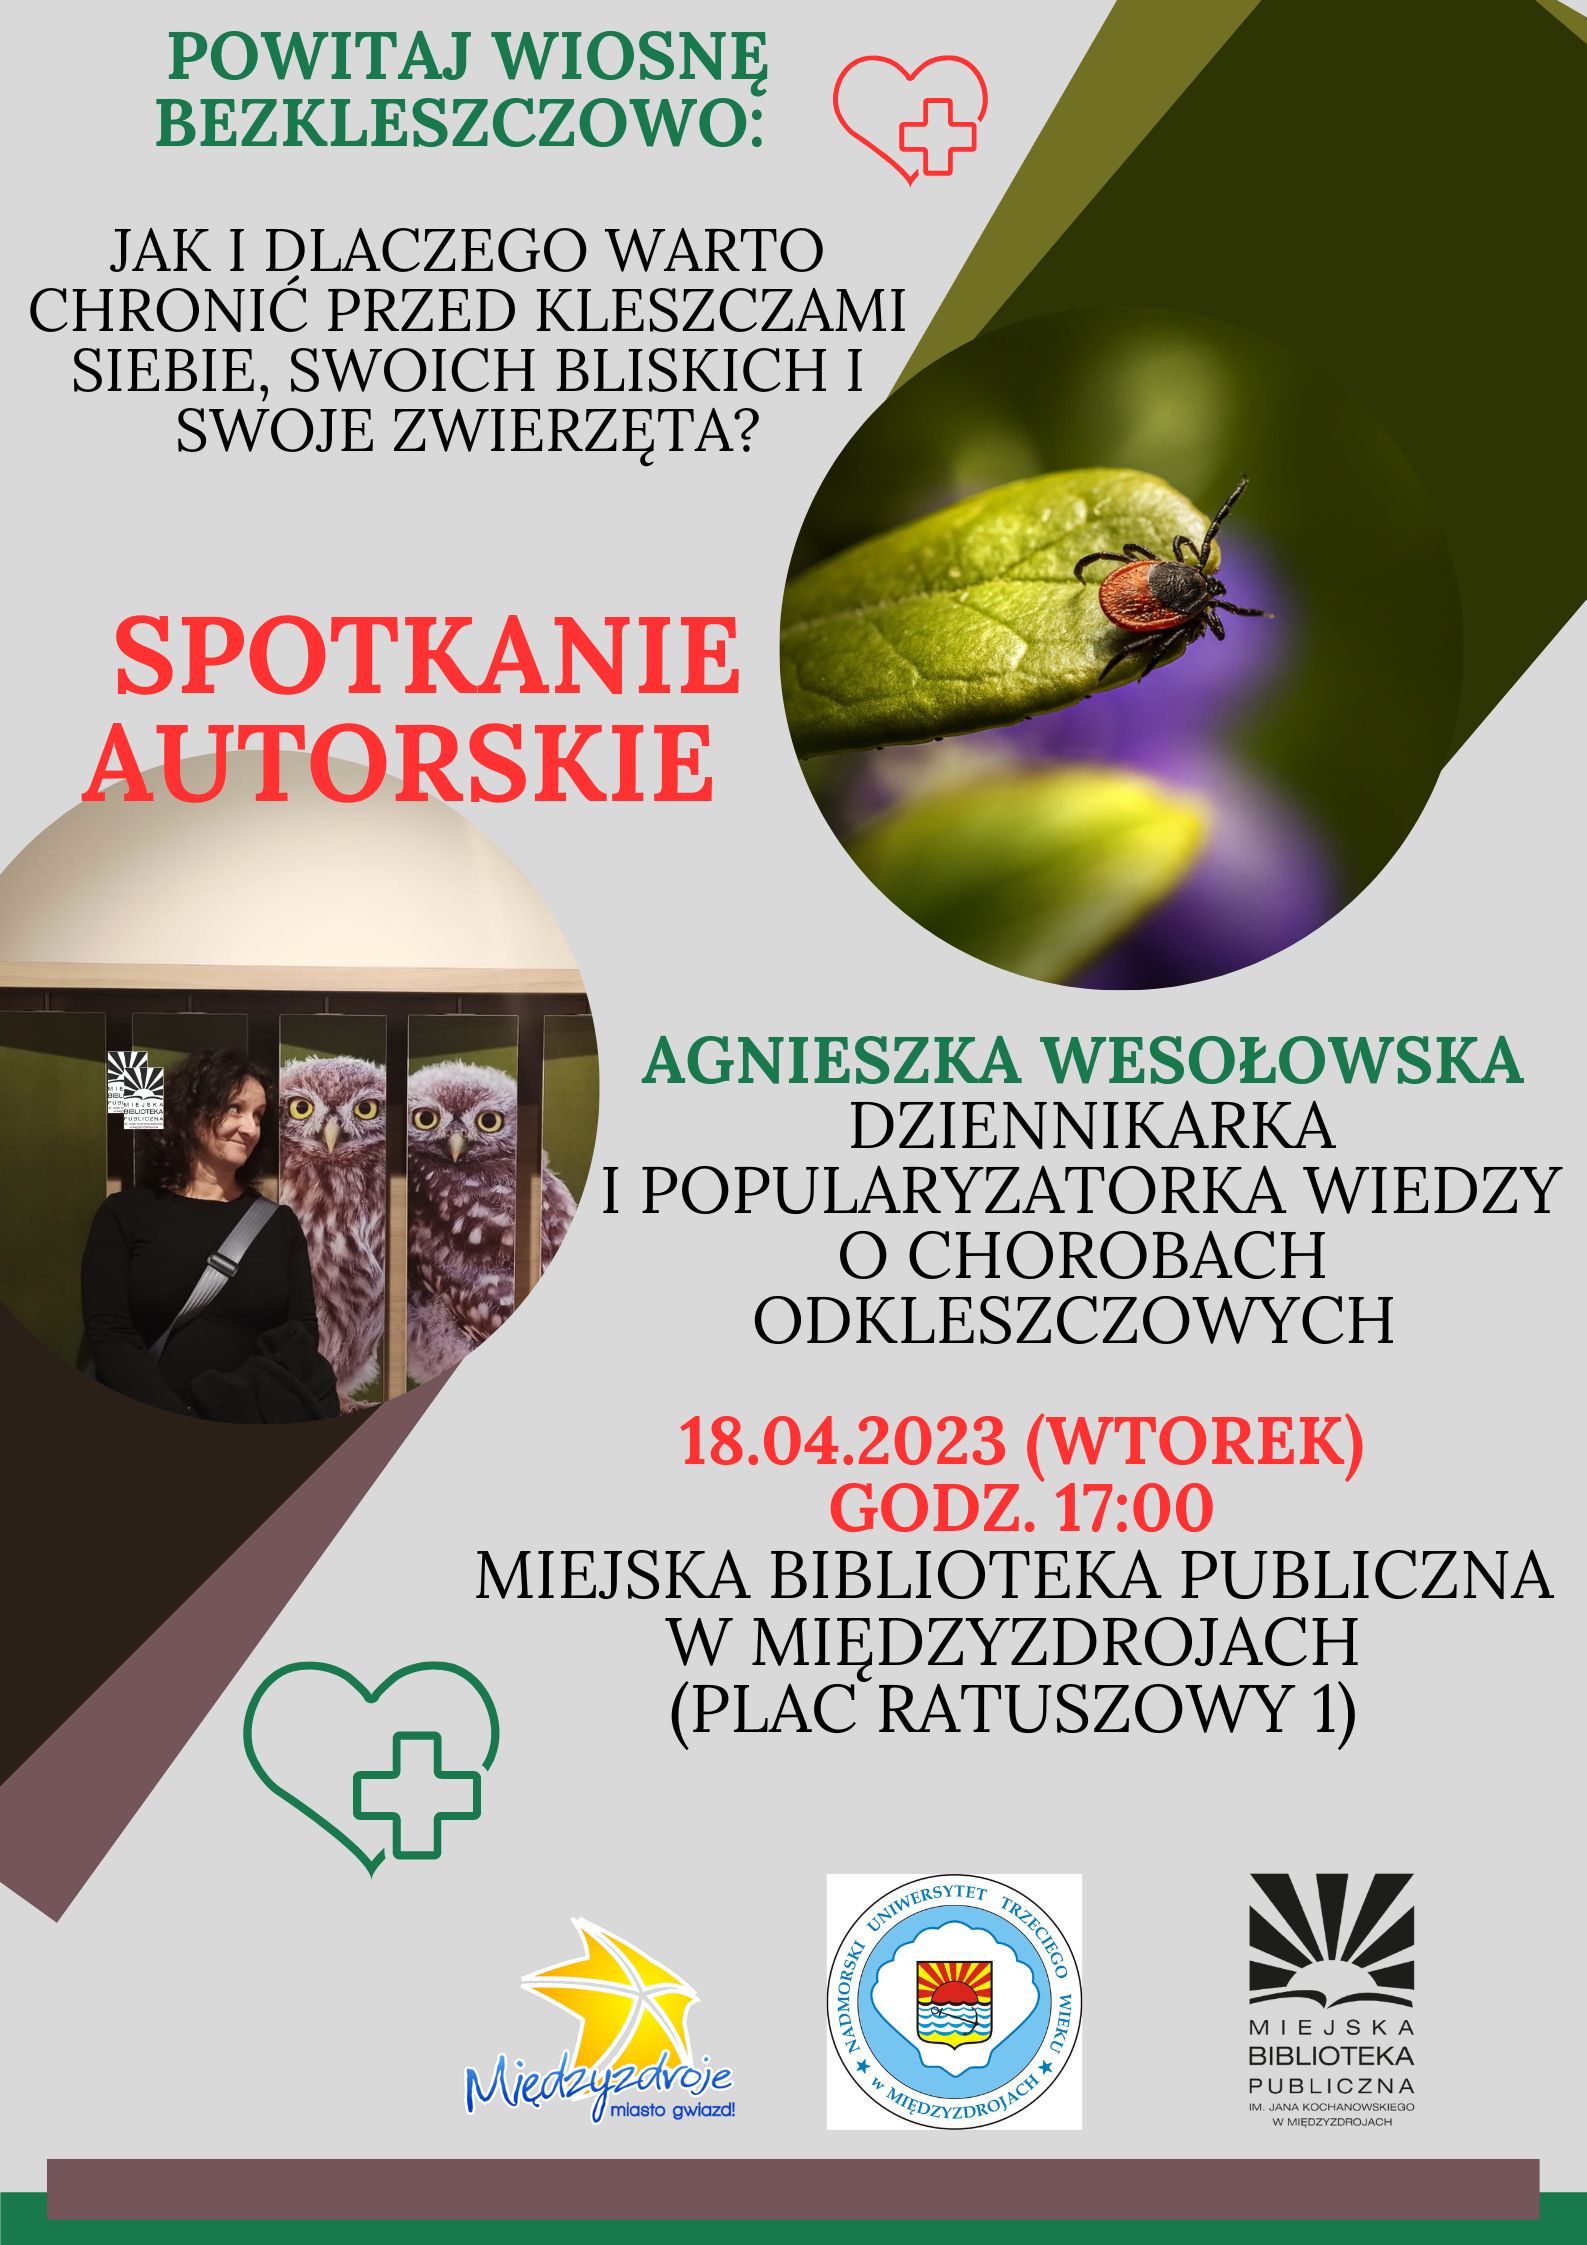 Spotkanie autorskie z Agnieszka Wesołowską - zapowiedź 